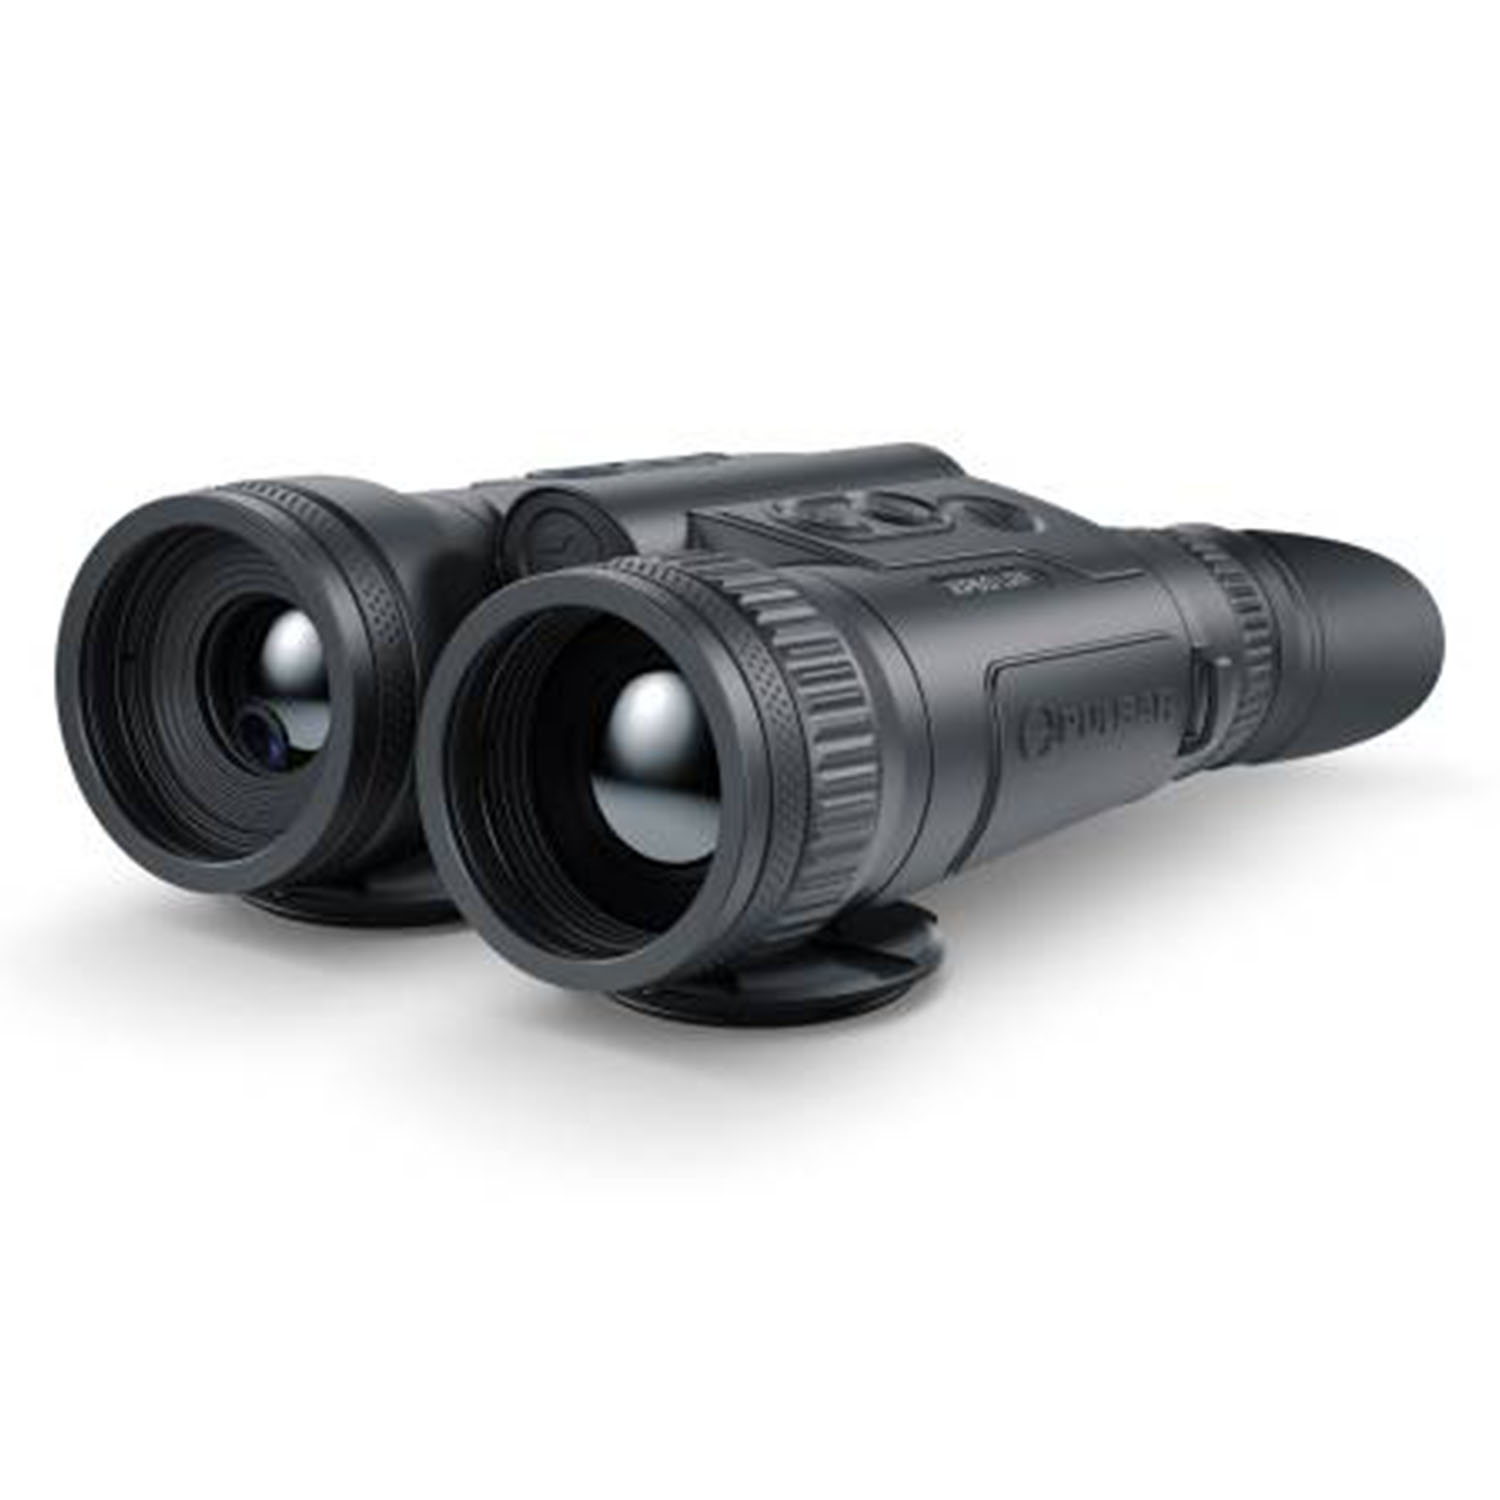 Thermal Imaging Binoculars Merger LRF XP50 - Night Vision Devices